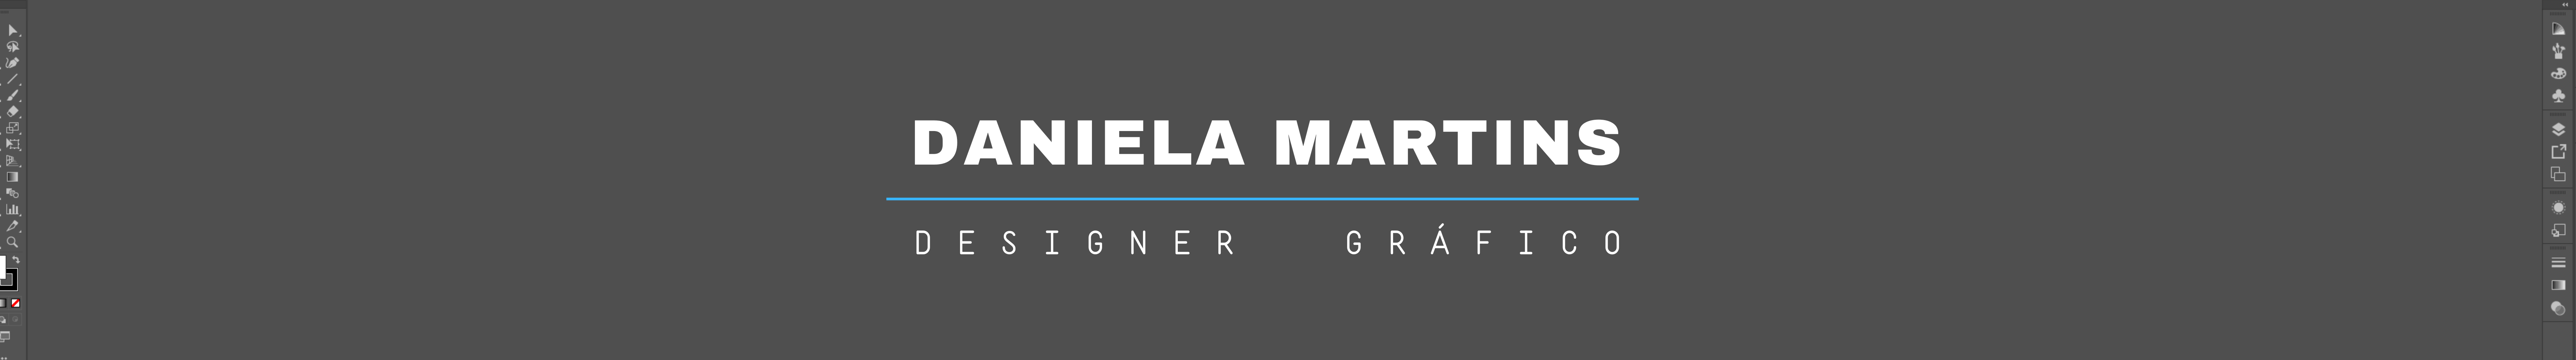 Daniela Martins's profile banner